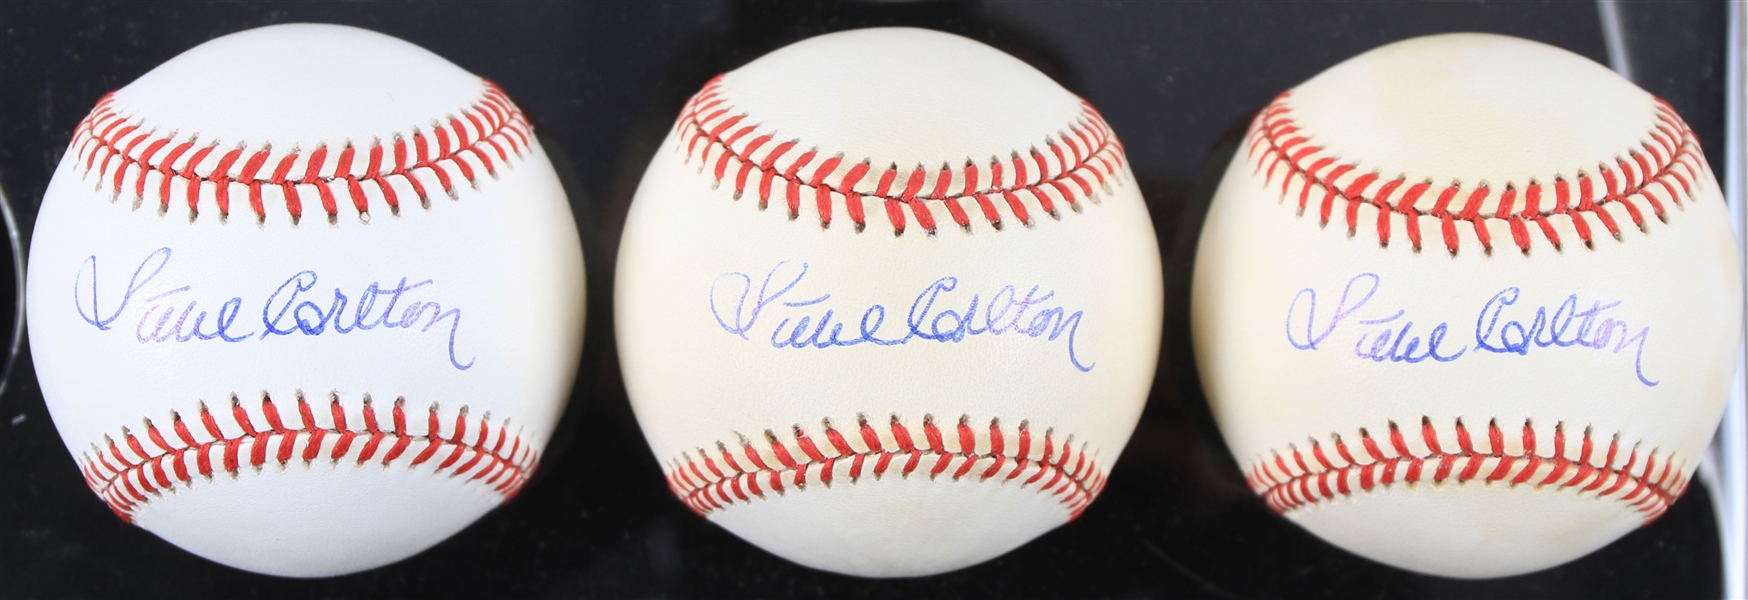 1993-94 Steve Carlton Philadelphia Phillies Signed ONL White Baseballs - Lot of 3 (JSA)